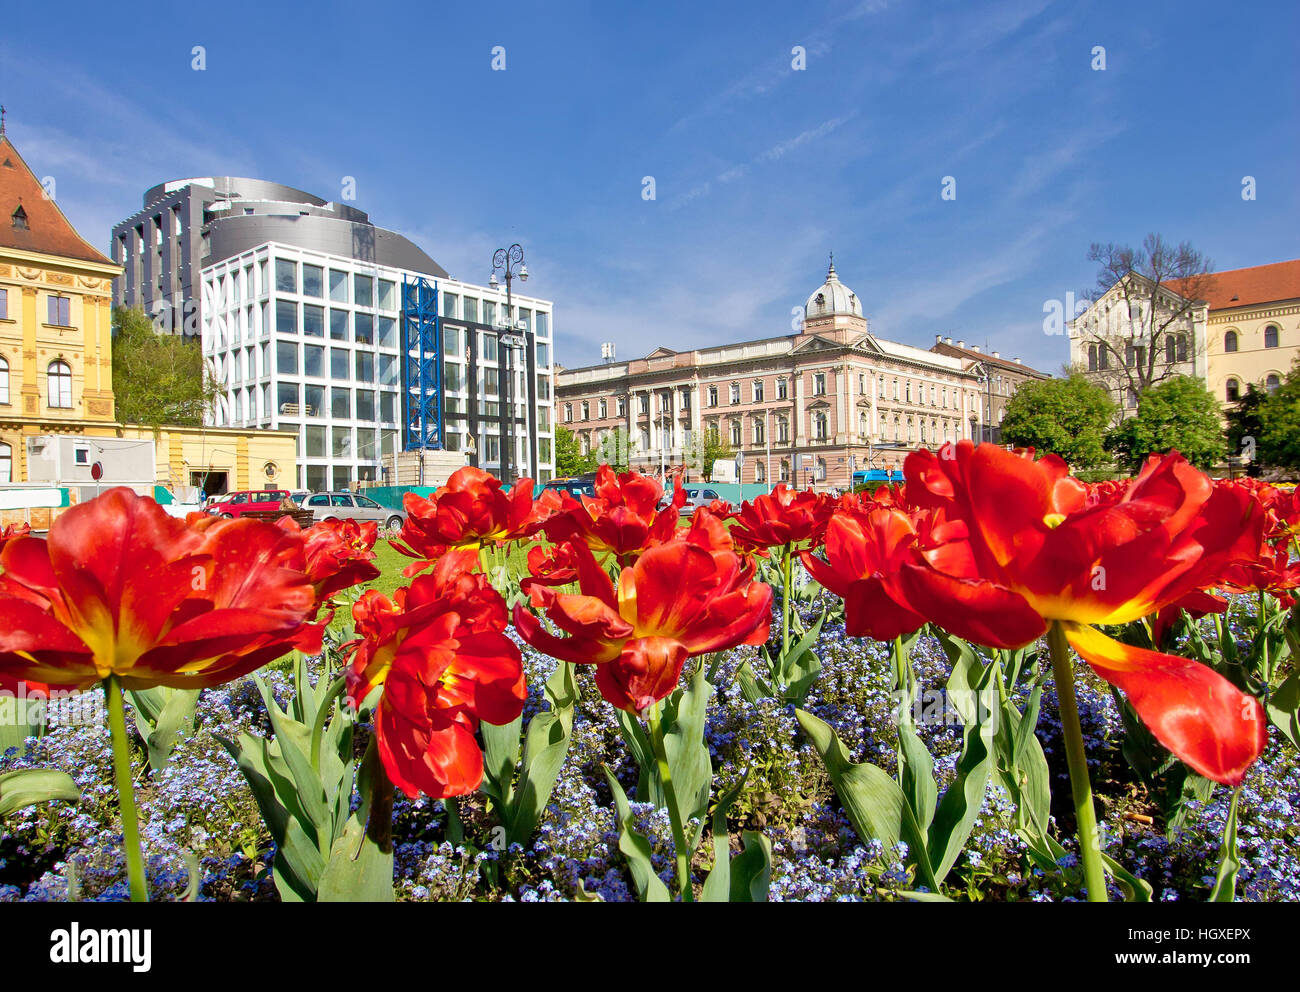 Zagreb colorful flora and architecture, Marshal Tito square Stock Photo